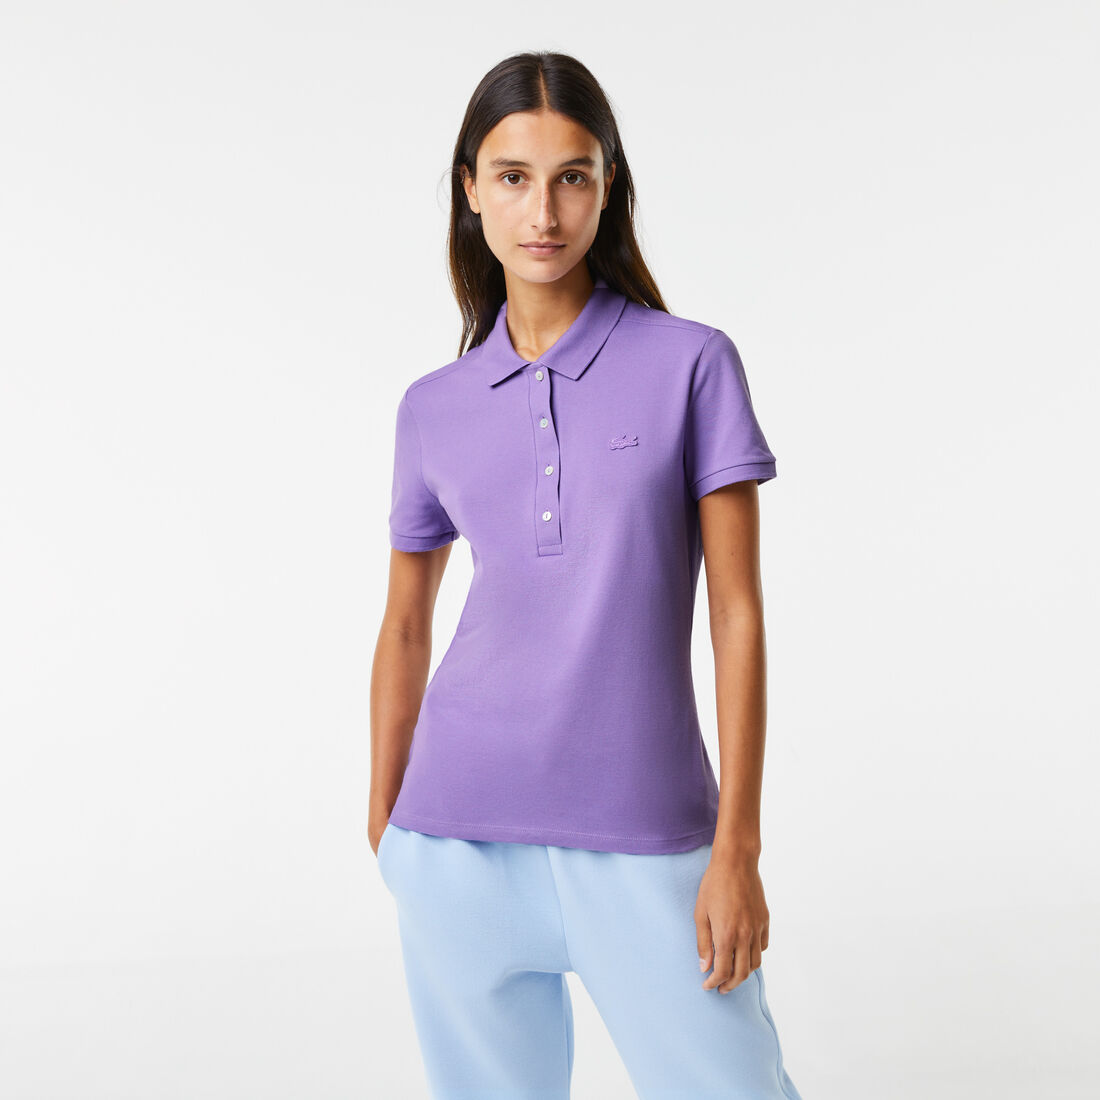 Lacoste Slim Fit Stretch Baumwoll Piqué Polo Shirts Damen Lila | ULHA-34750